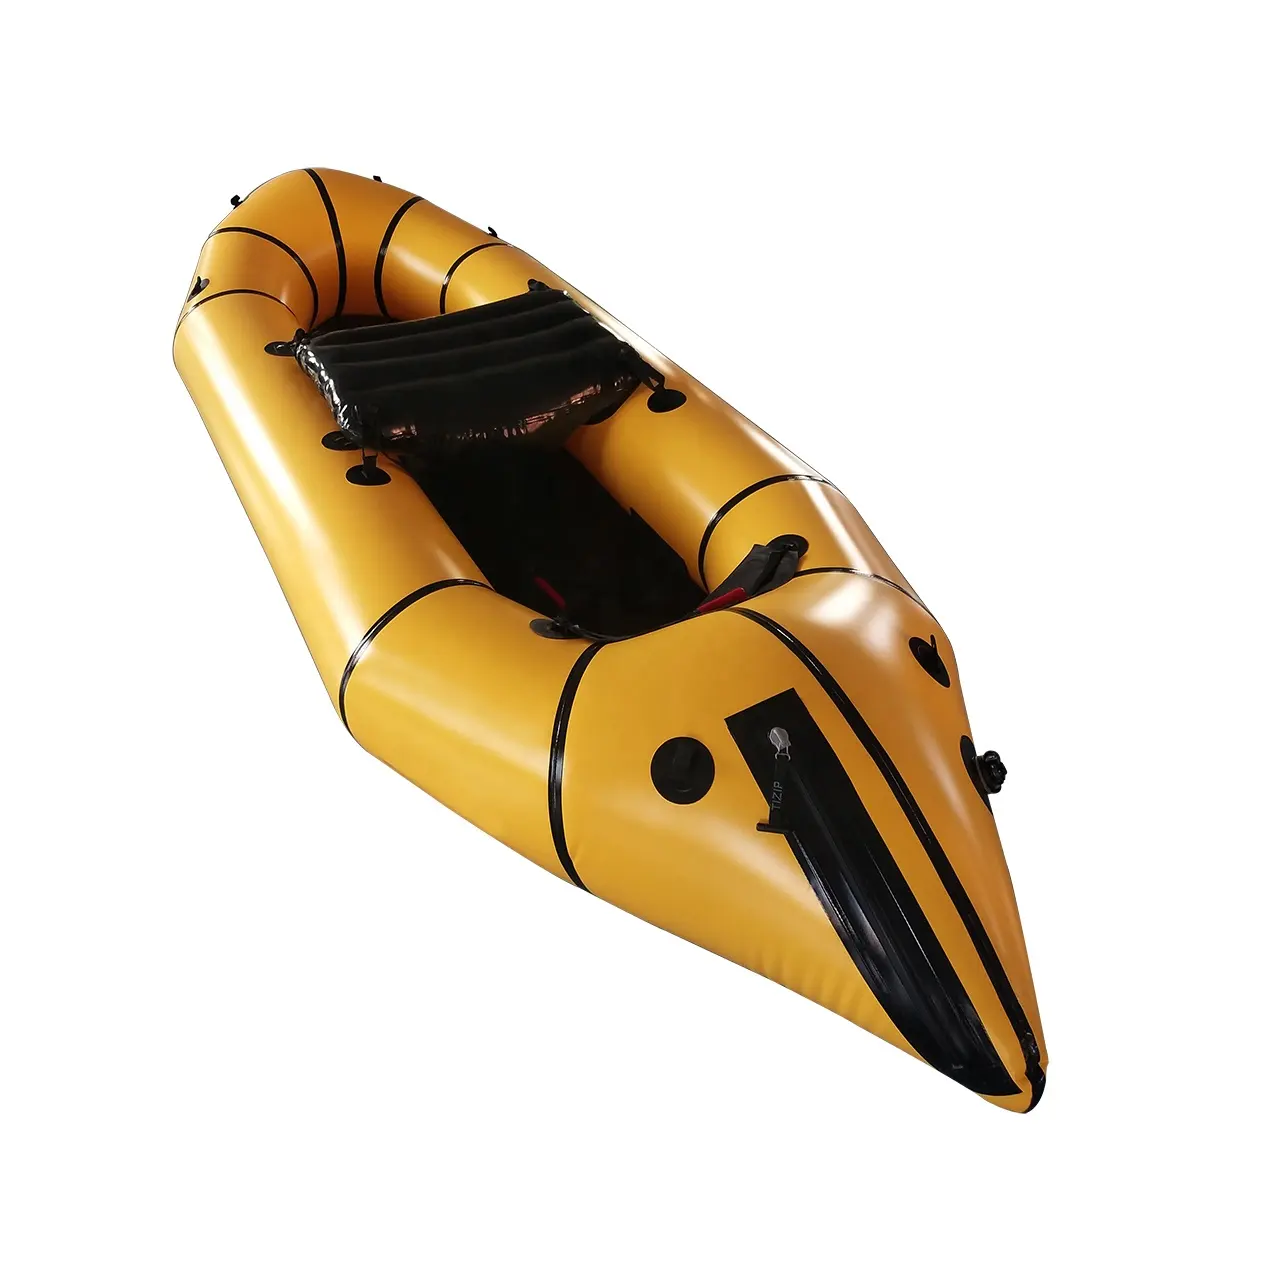 Prezzo economico nuovo Design PVC light Calm water packraft boat per l'avventura